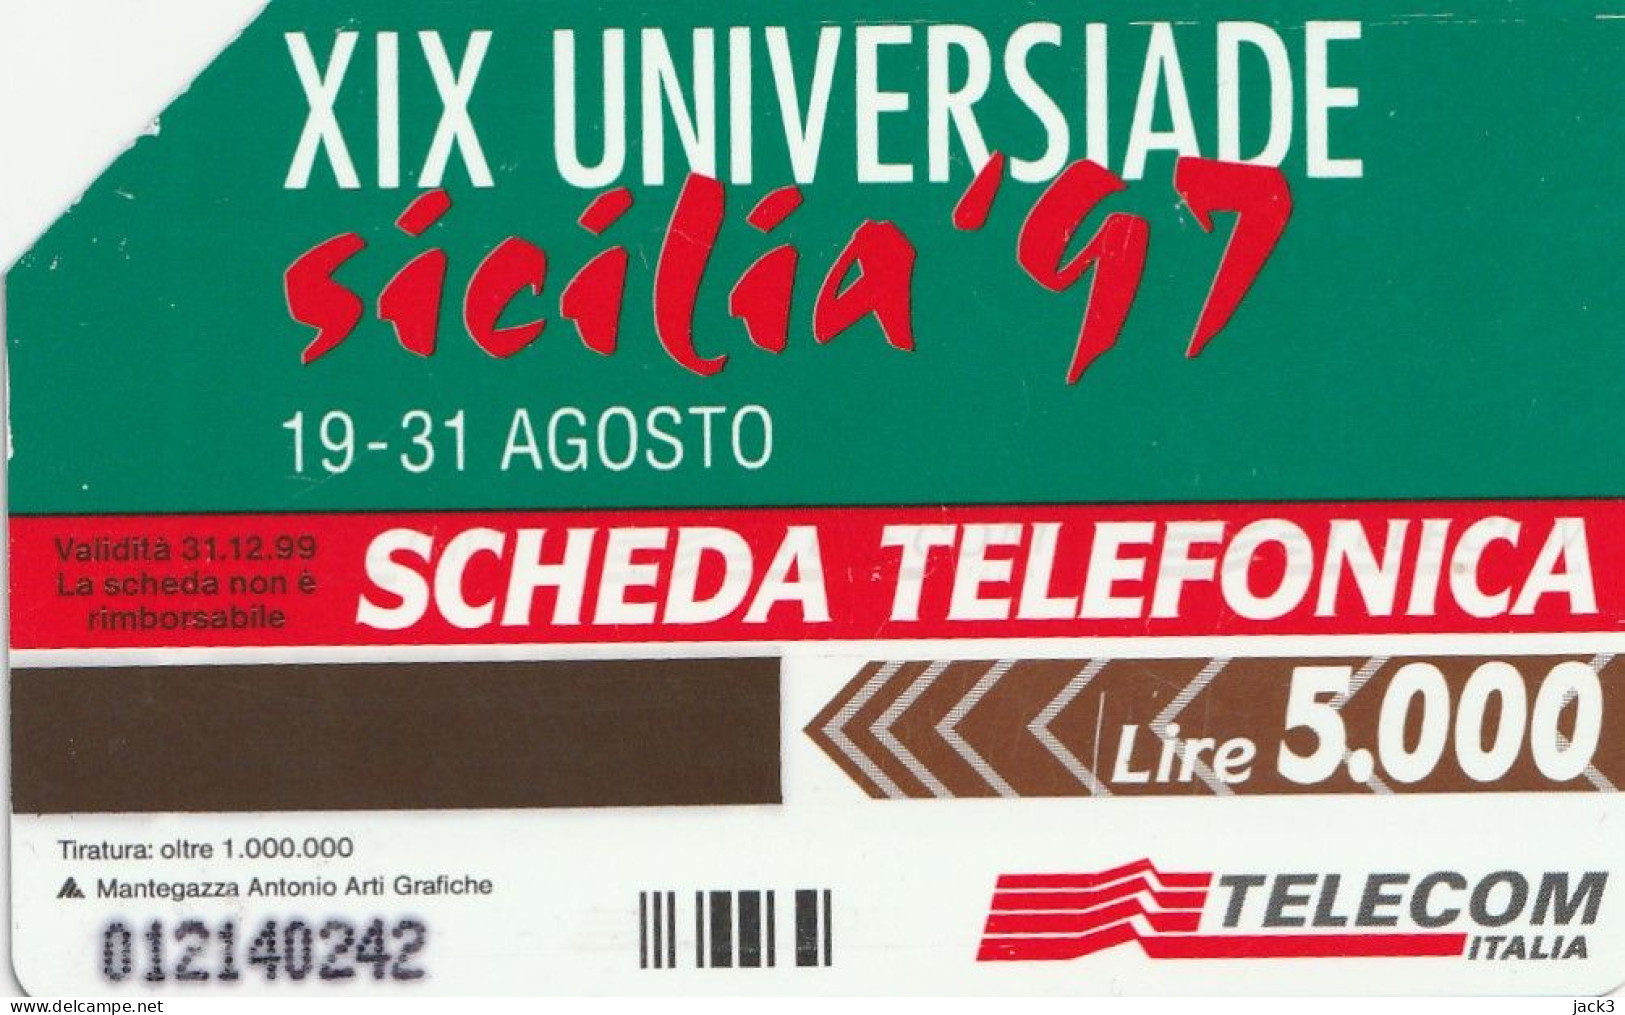 SCEDA TELEFONICA - XIX UNIVERSIADE - SICILIA '97 (2 SCANS) - Publiques Thématiques